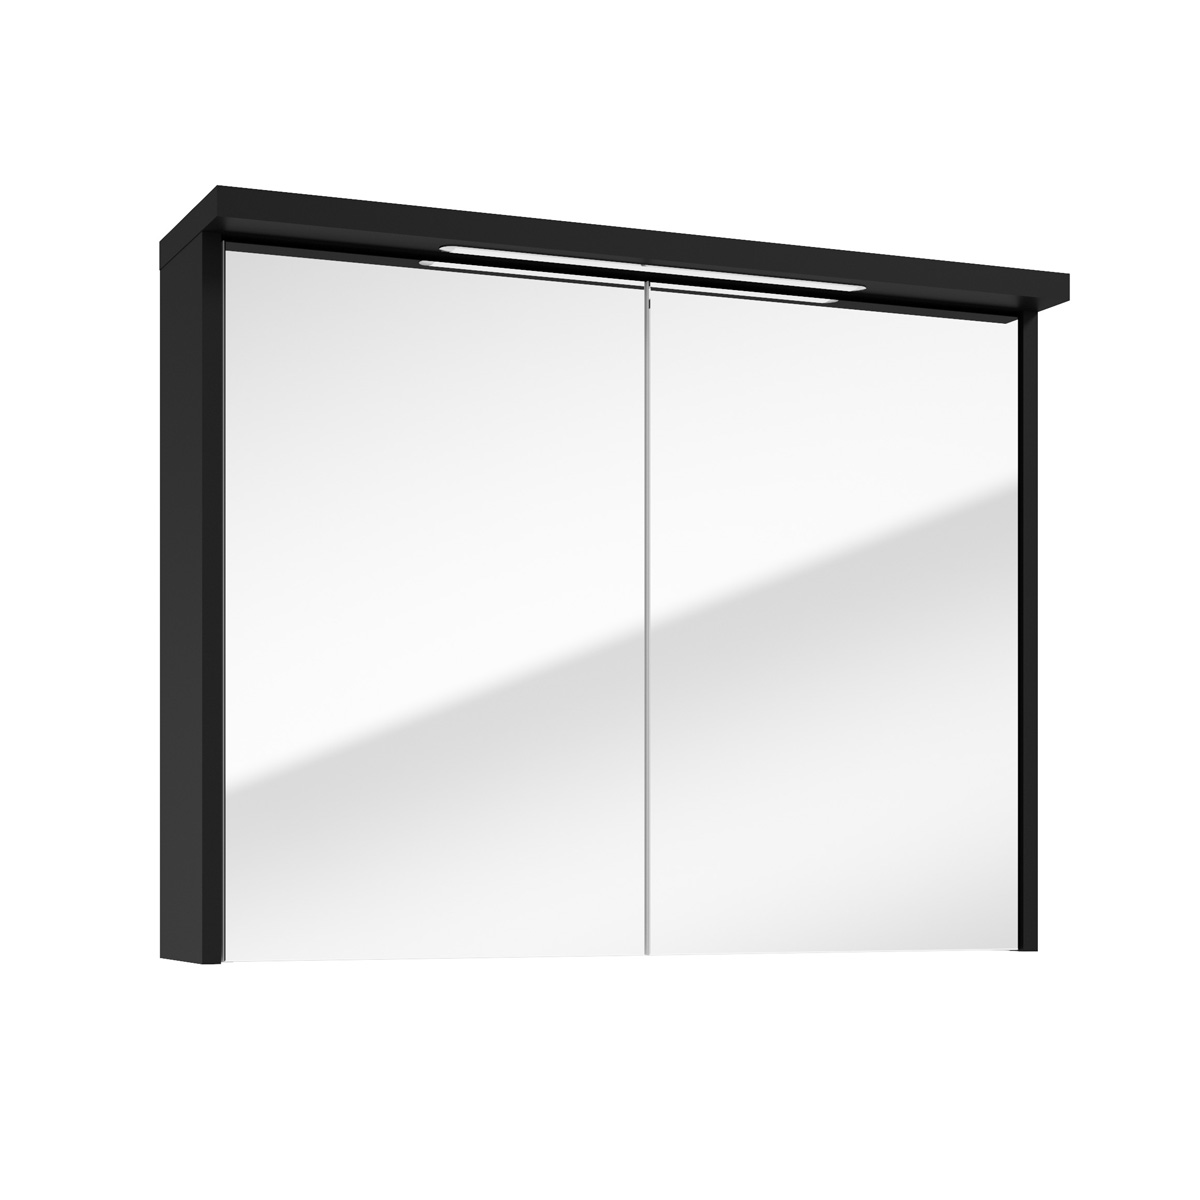 Fontana Grado spiegelkast met verlichting 80cm 2 deuren zwart mat